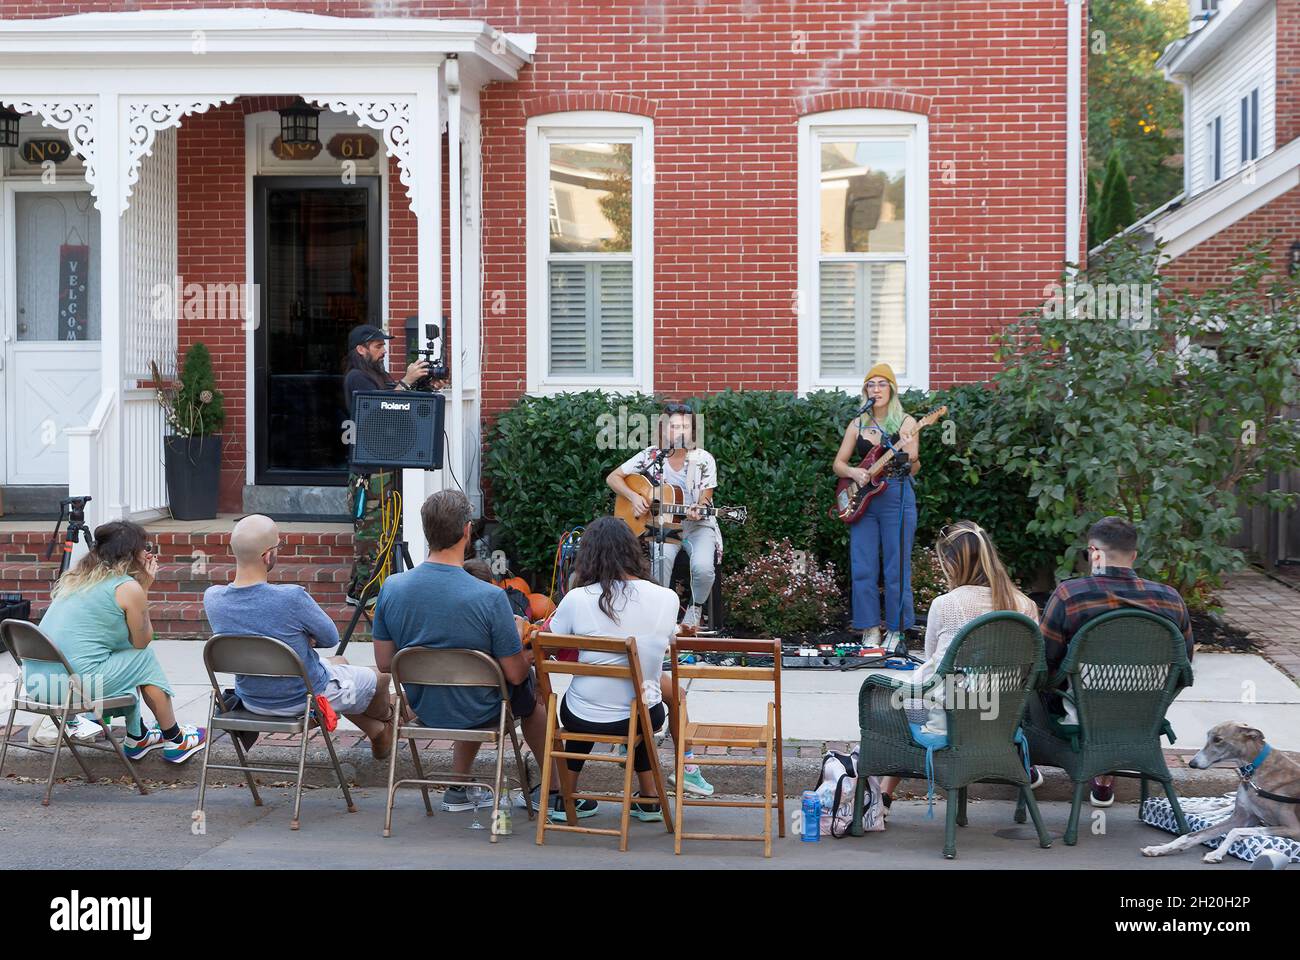 Porchfest, evento musicale annuale a Lambertville, New Jersey, riunisce musicisti e quartieri locali condividendo musica dal vivo e un senso di comunità. Foto Stock